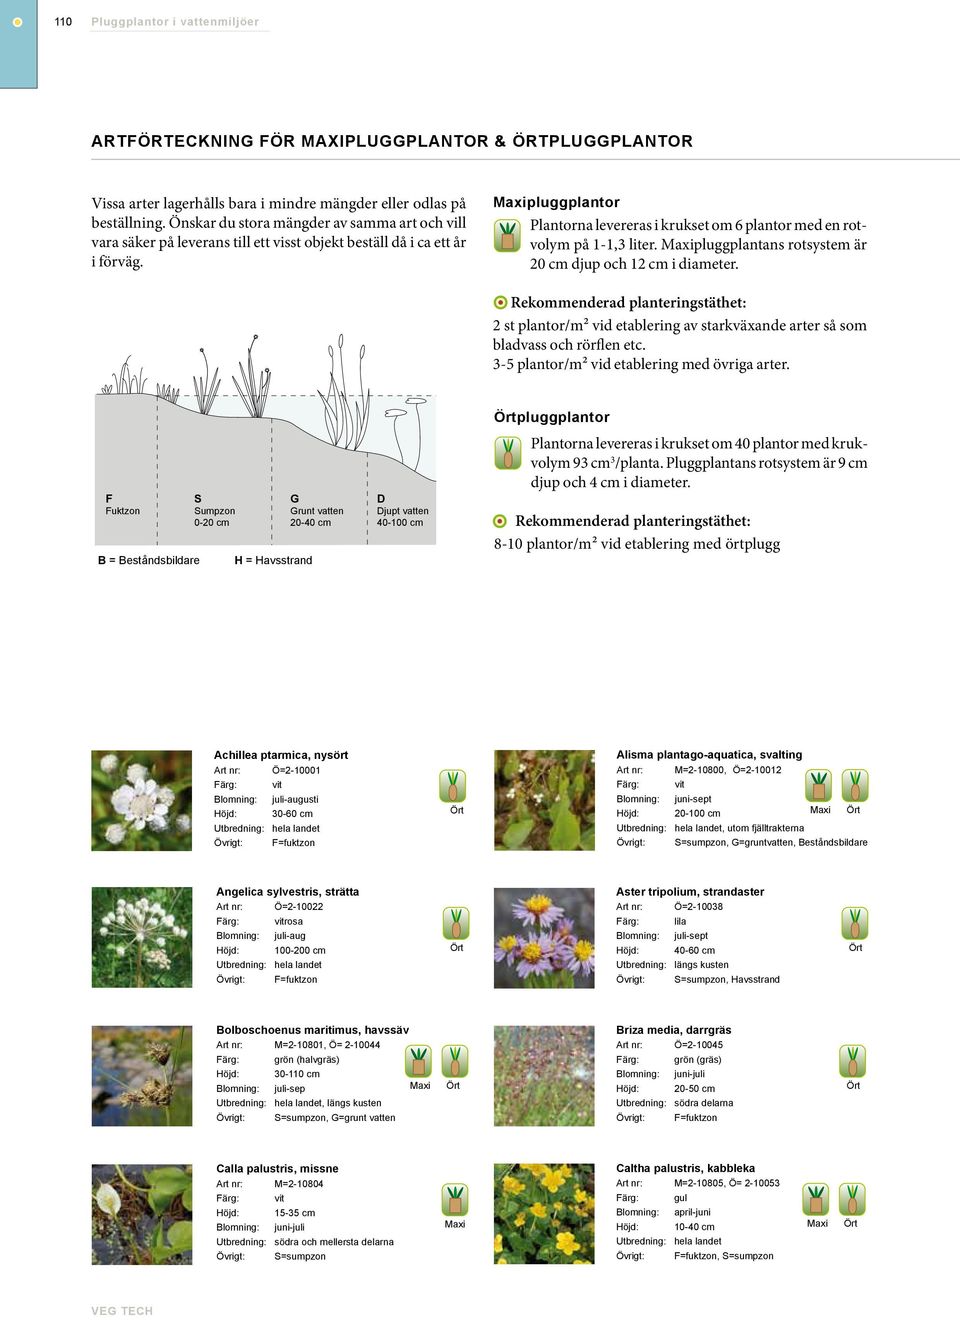 pluggplantor Plantorna levereras i krukset om 6 plantor med en rotvolym på 1-1,3 liter. pluggplantans rotsystem är 20 cm djup och 12 cm i diameter.